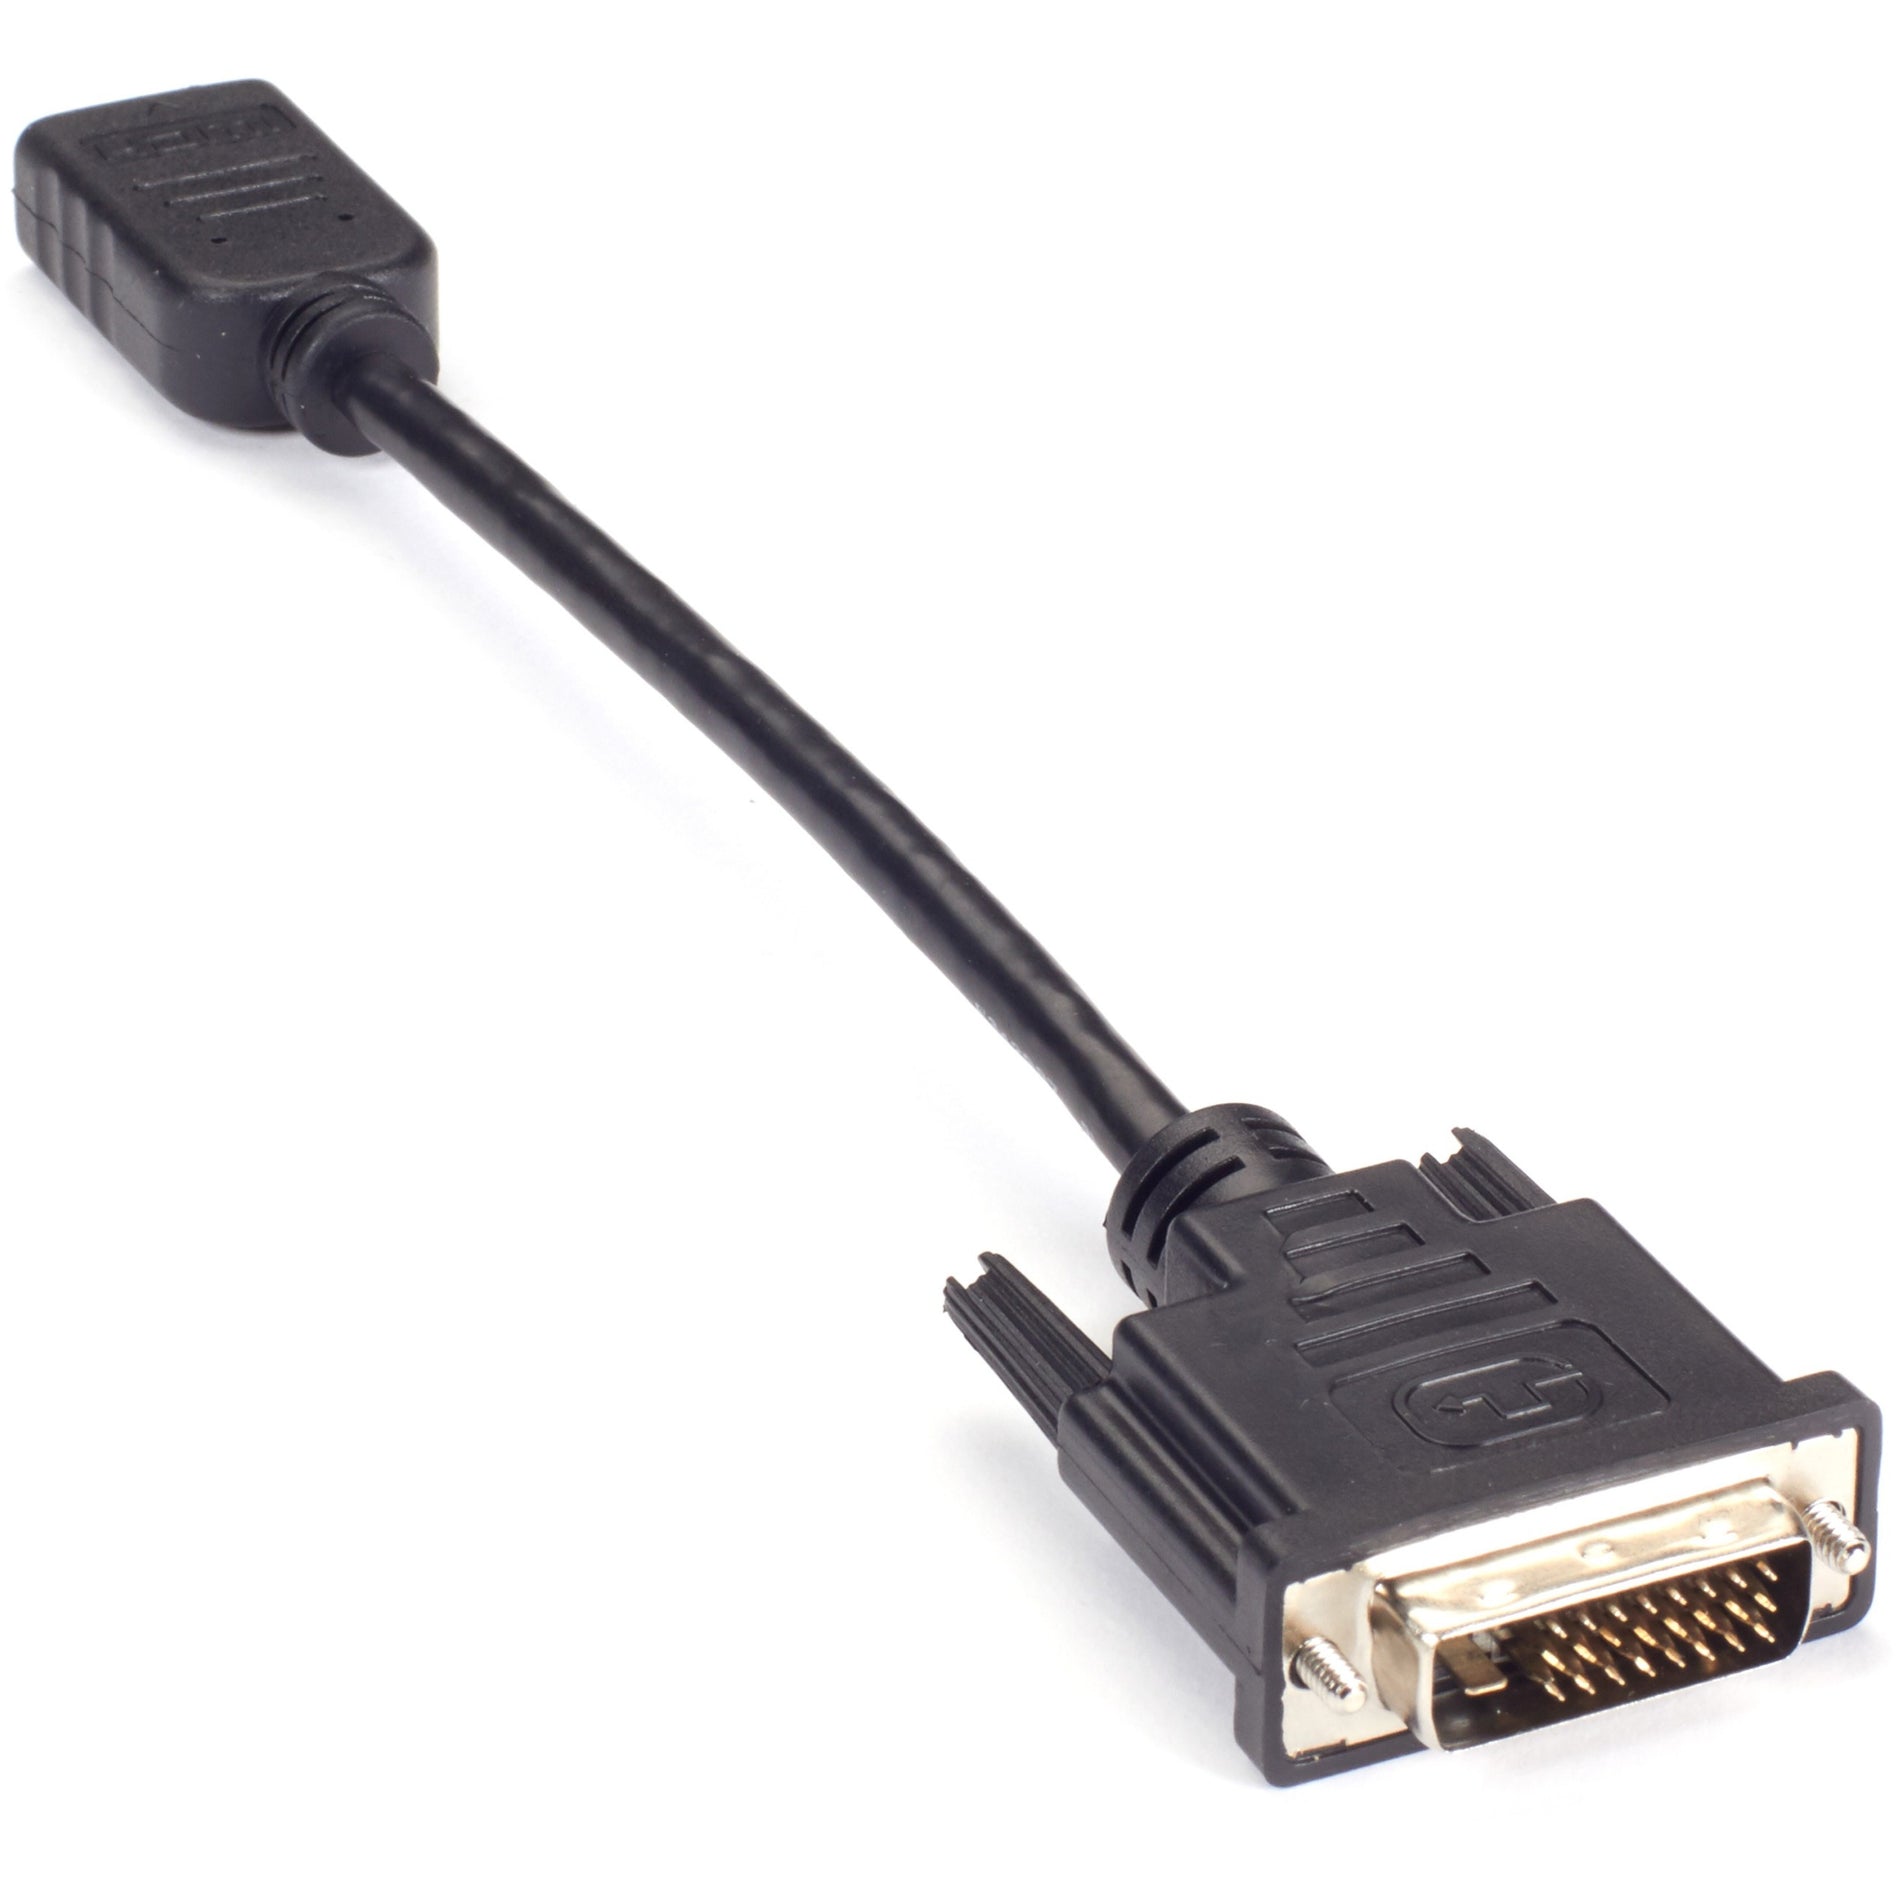 ブラックボックス VA-DVID-HDMI ビデオアダプタードングル - DVI-Dメス To HDMIメス、ストレス耐性、ストレインリリーフ、8" ケーブル長、1920 x 1080 サポート解像度